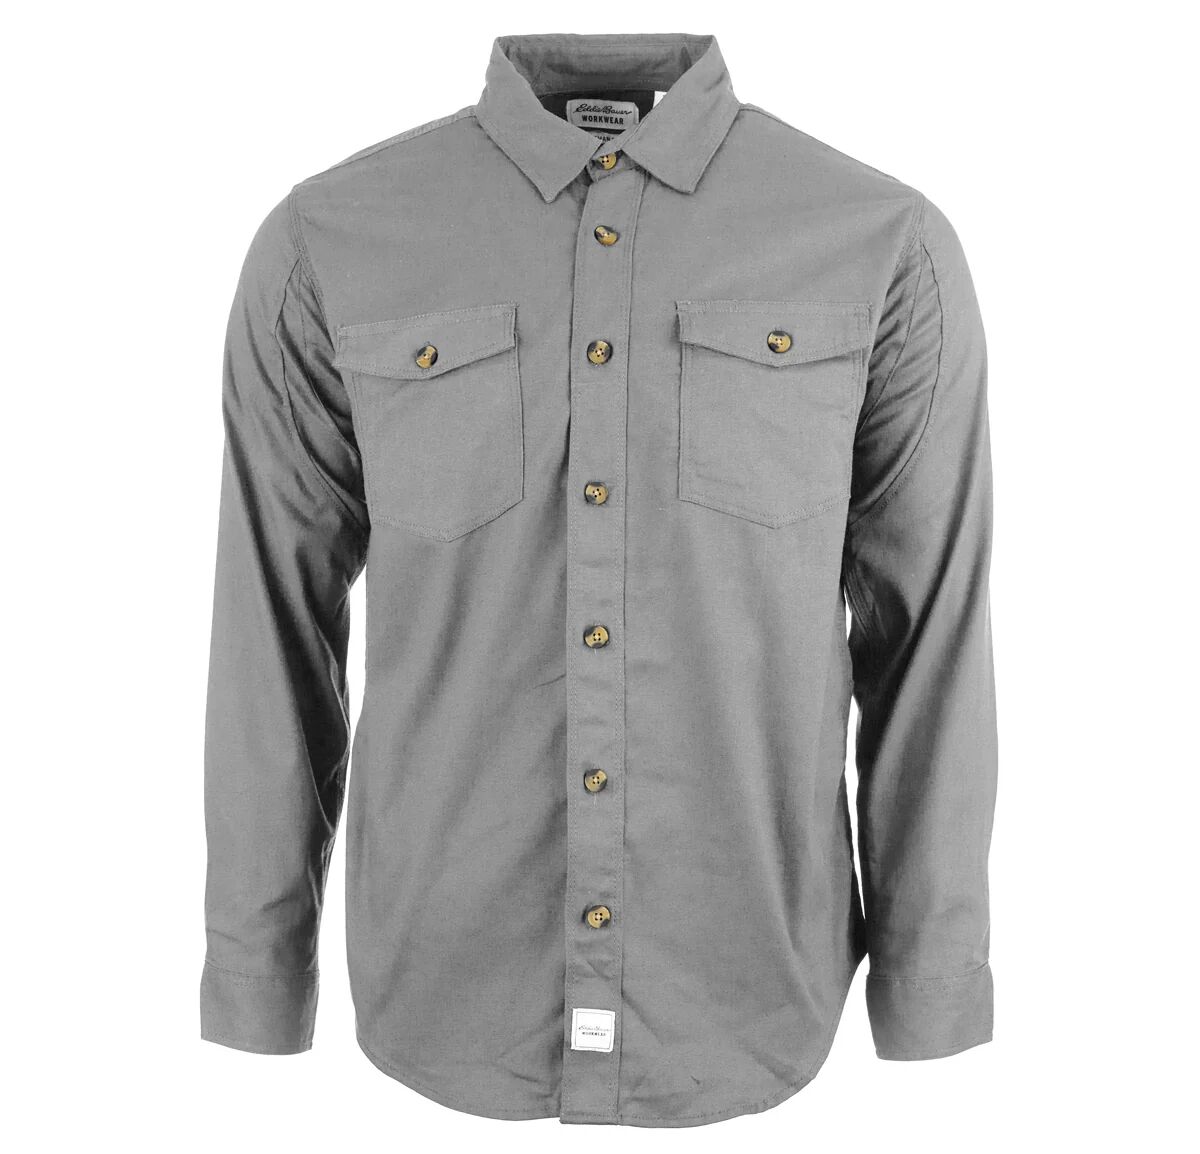 Eddie Bauer Men's License to Will Long Sleeve Shirt Grey XL